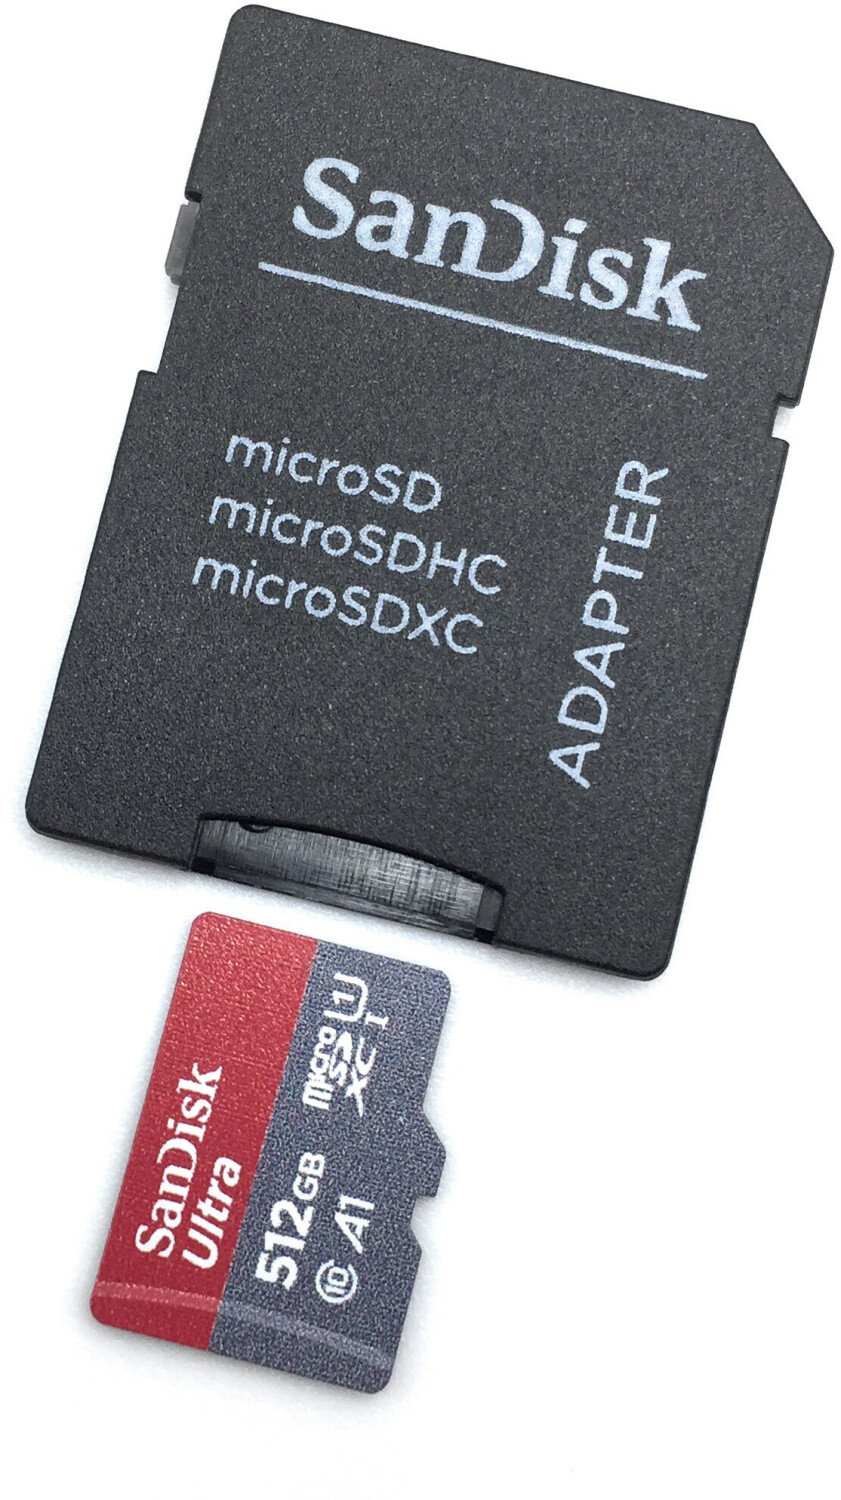 MicroSD : 512 Go de stockage à moitié prix avec cette carte de chez SanDisk